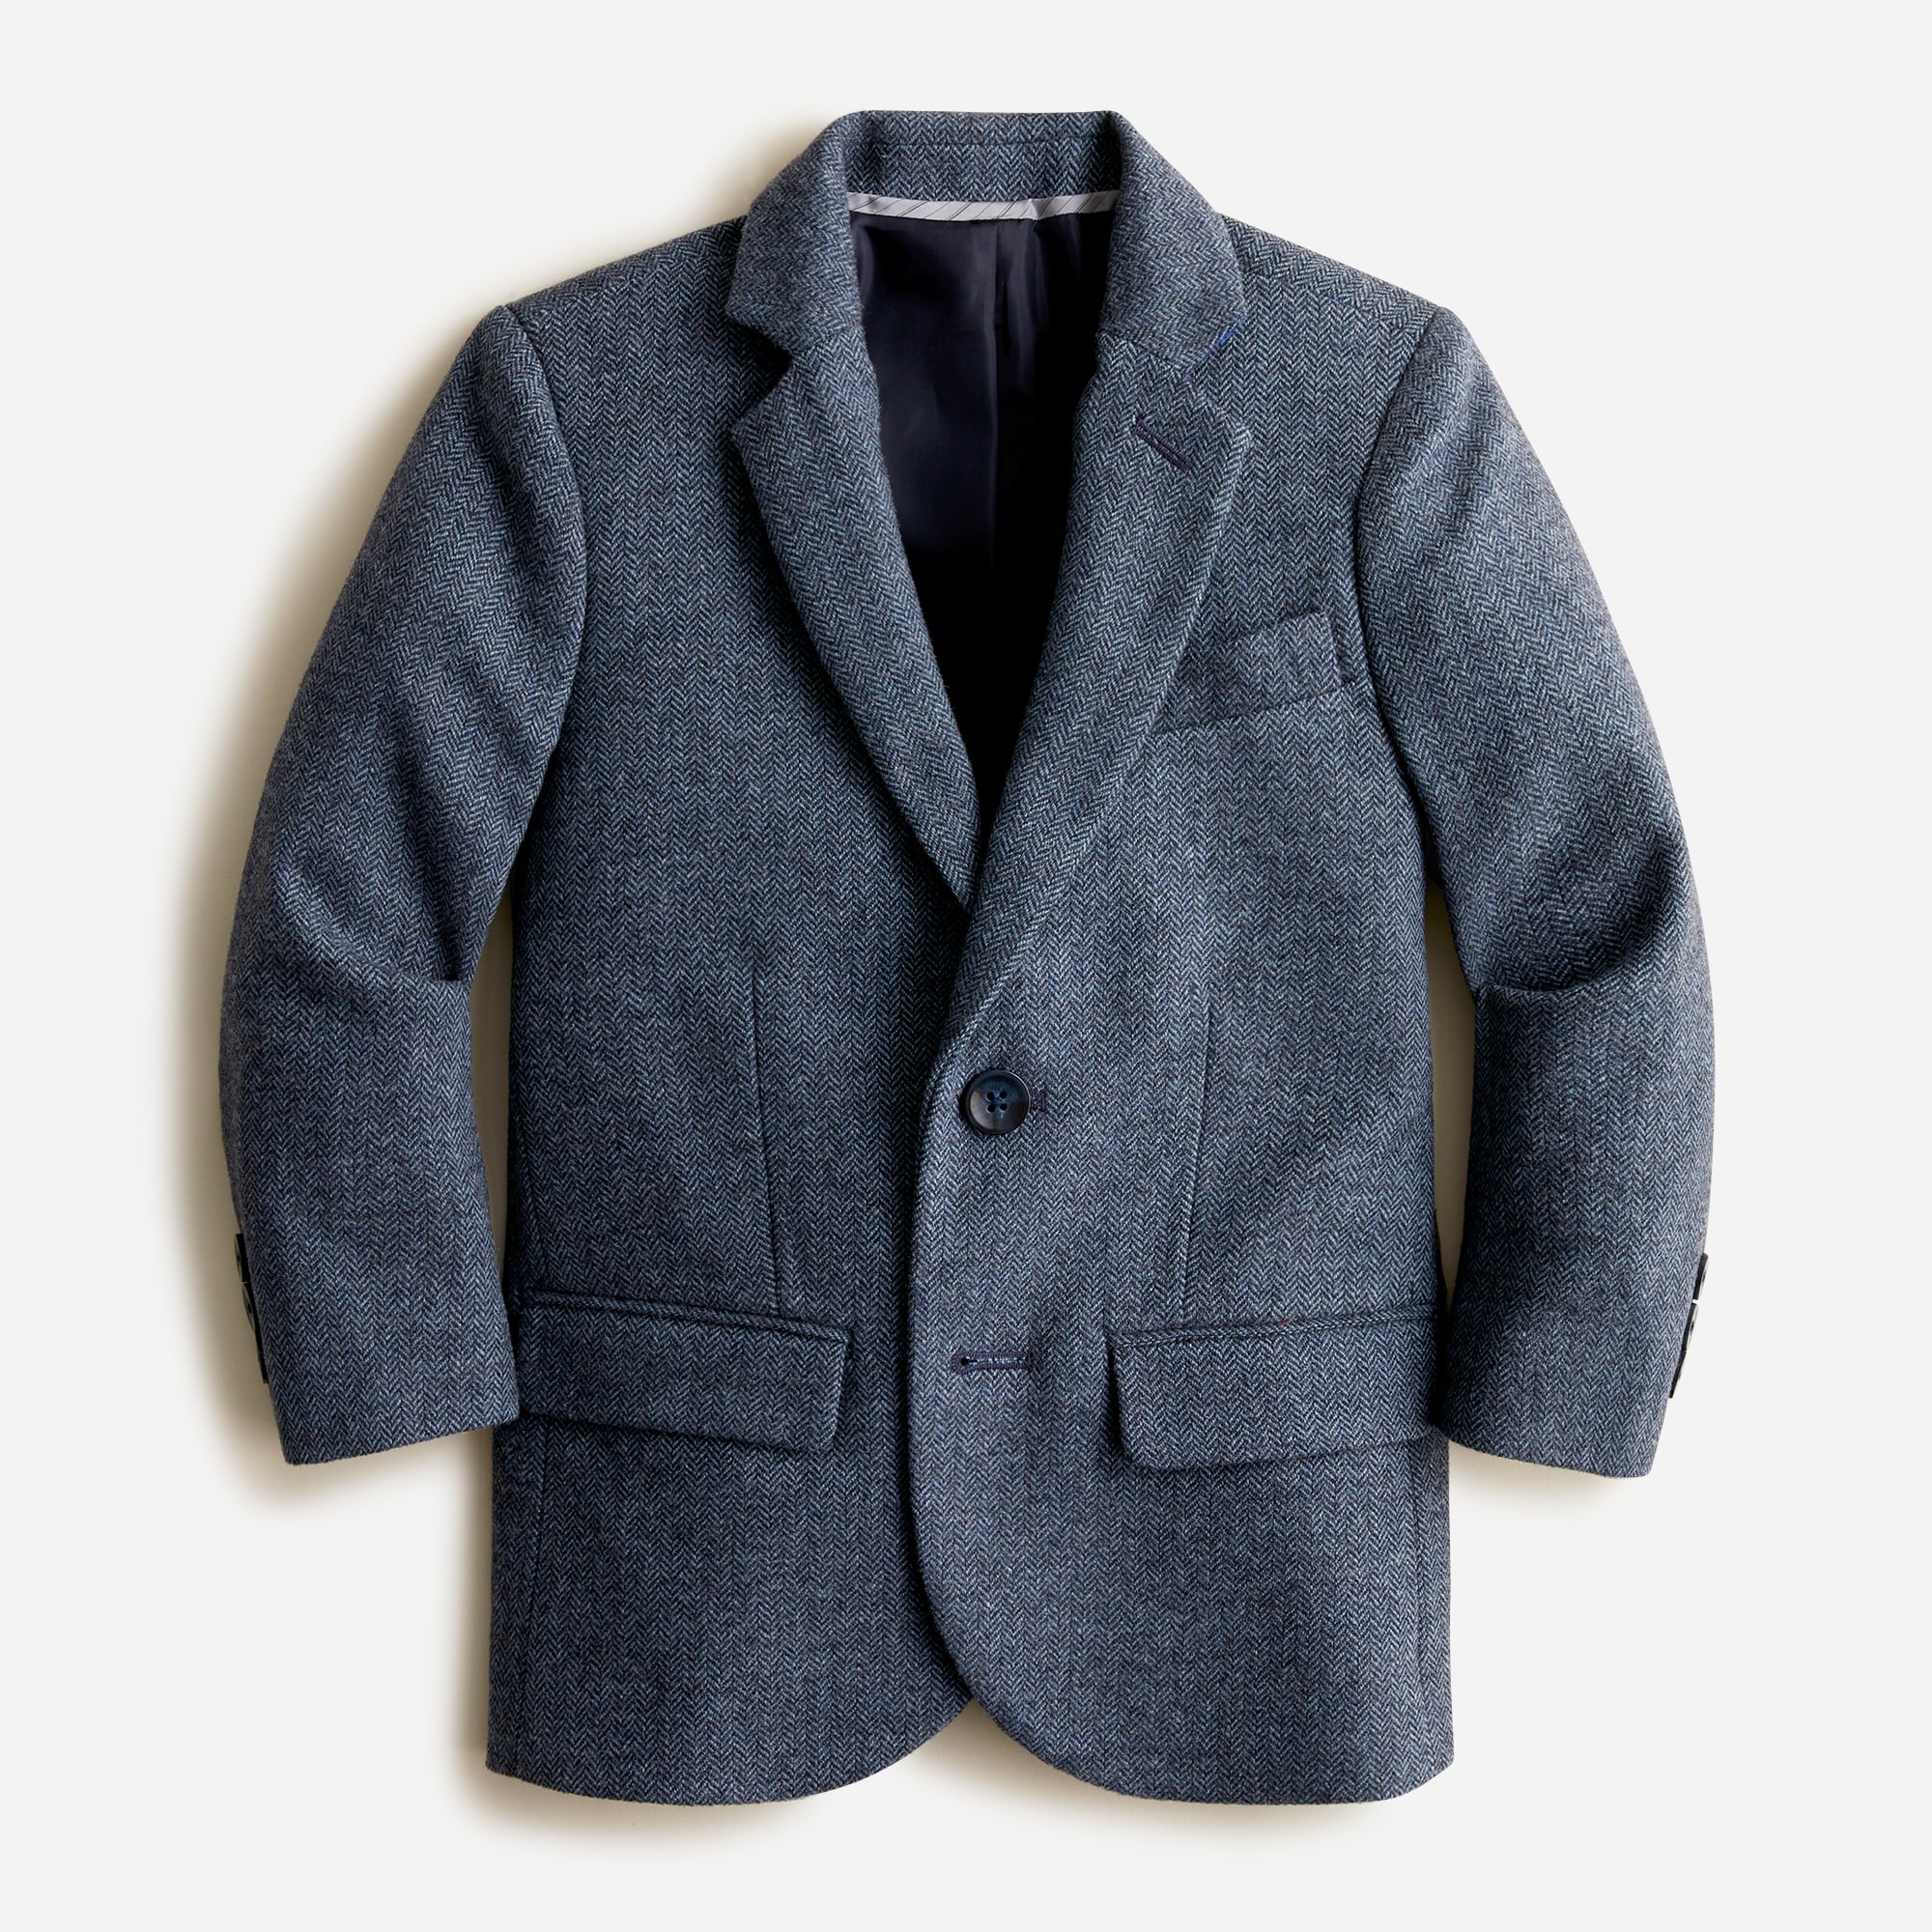  Boys' Ludlow suit jacket in wool-blend herringbone